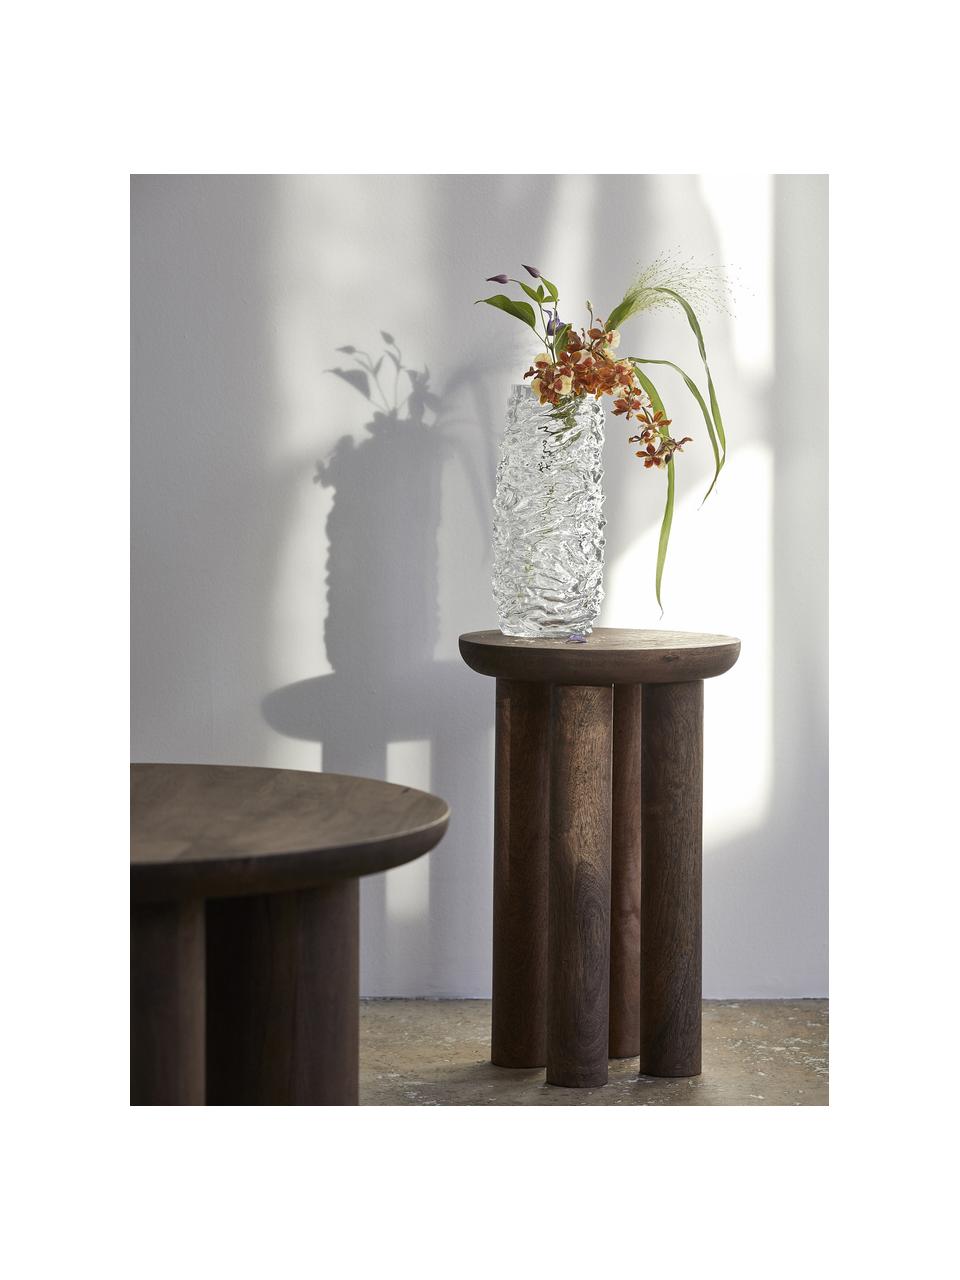 Hohe Glas-Vase Maio mit strukturierter Oberfläche, Glas, Transparent, Ø 12 x H 28 cm